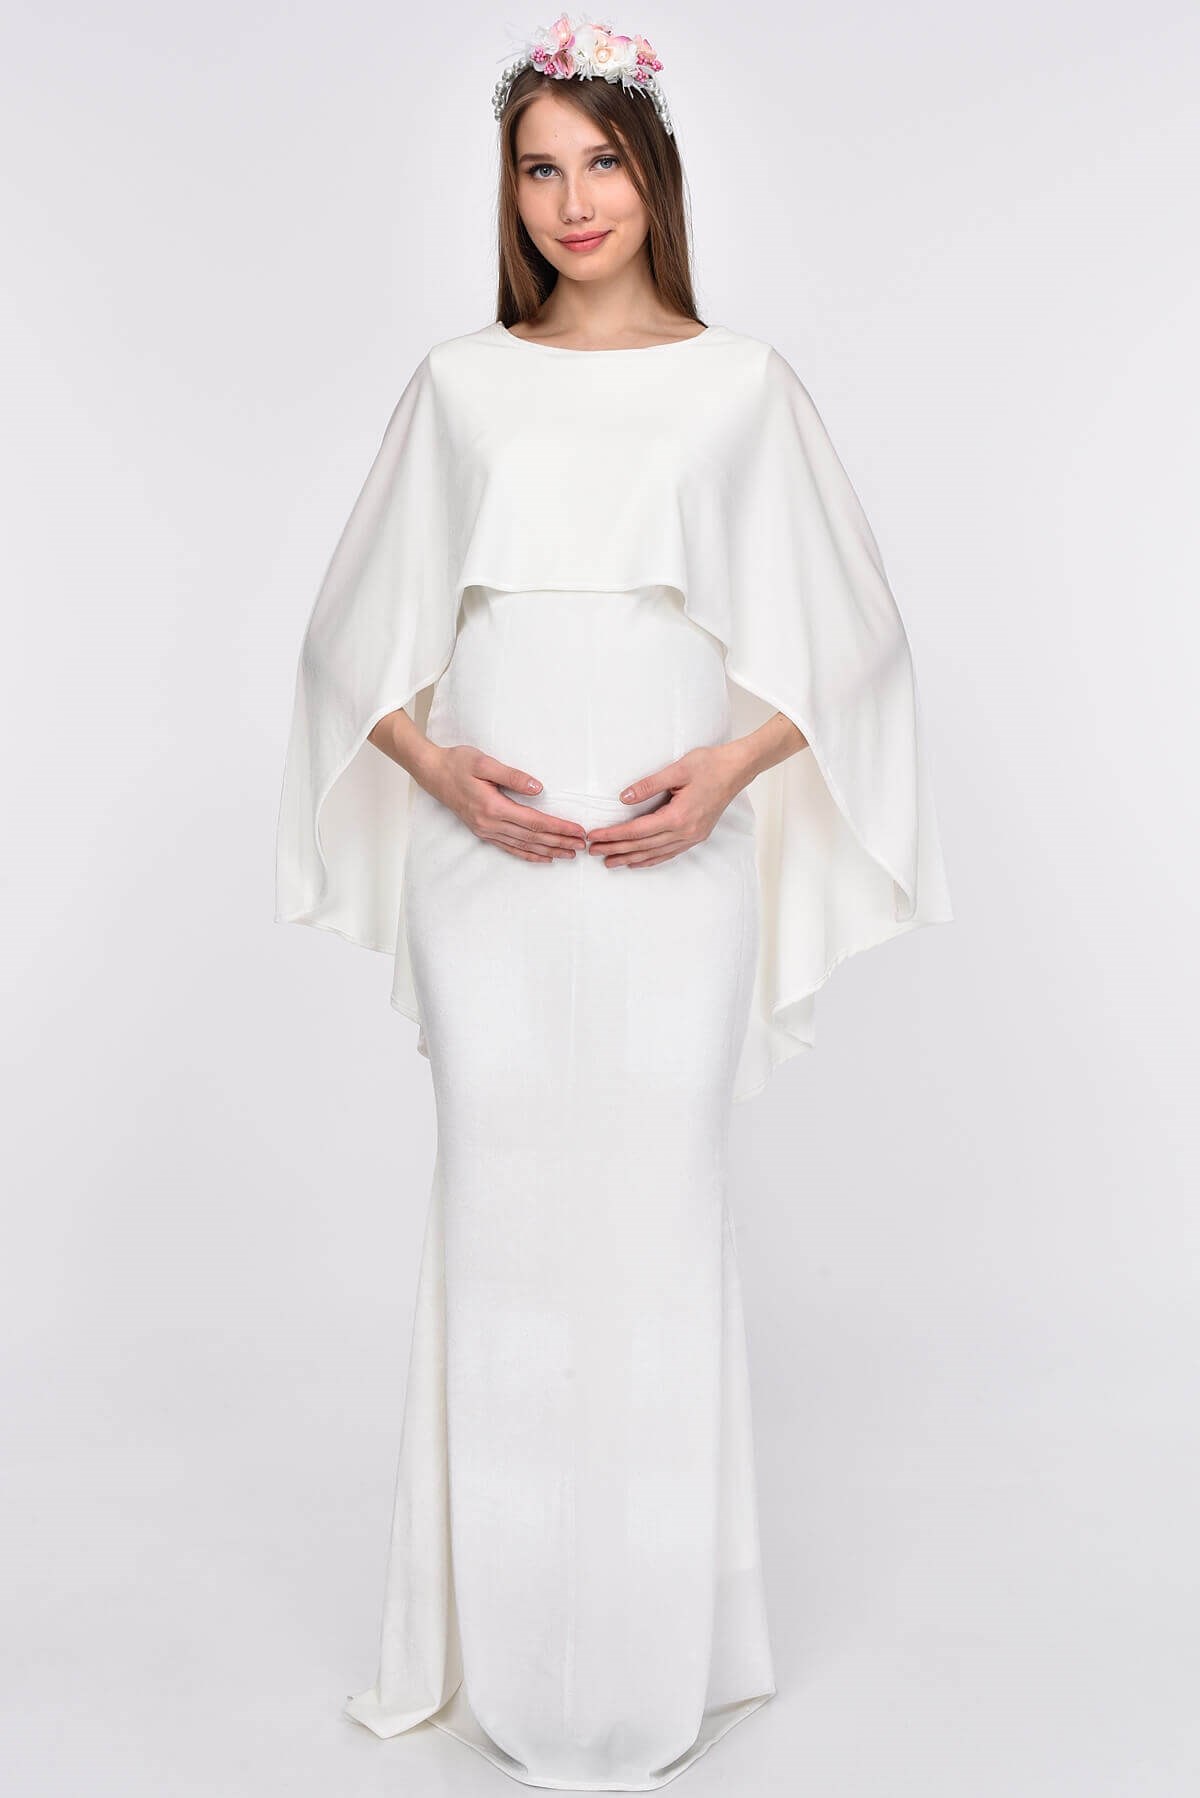 Moda Labio | Pelerinli Tesettür Kadife Balık Beyaz Hamile Elbisesi